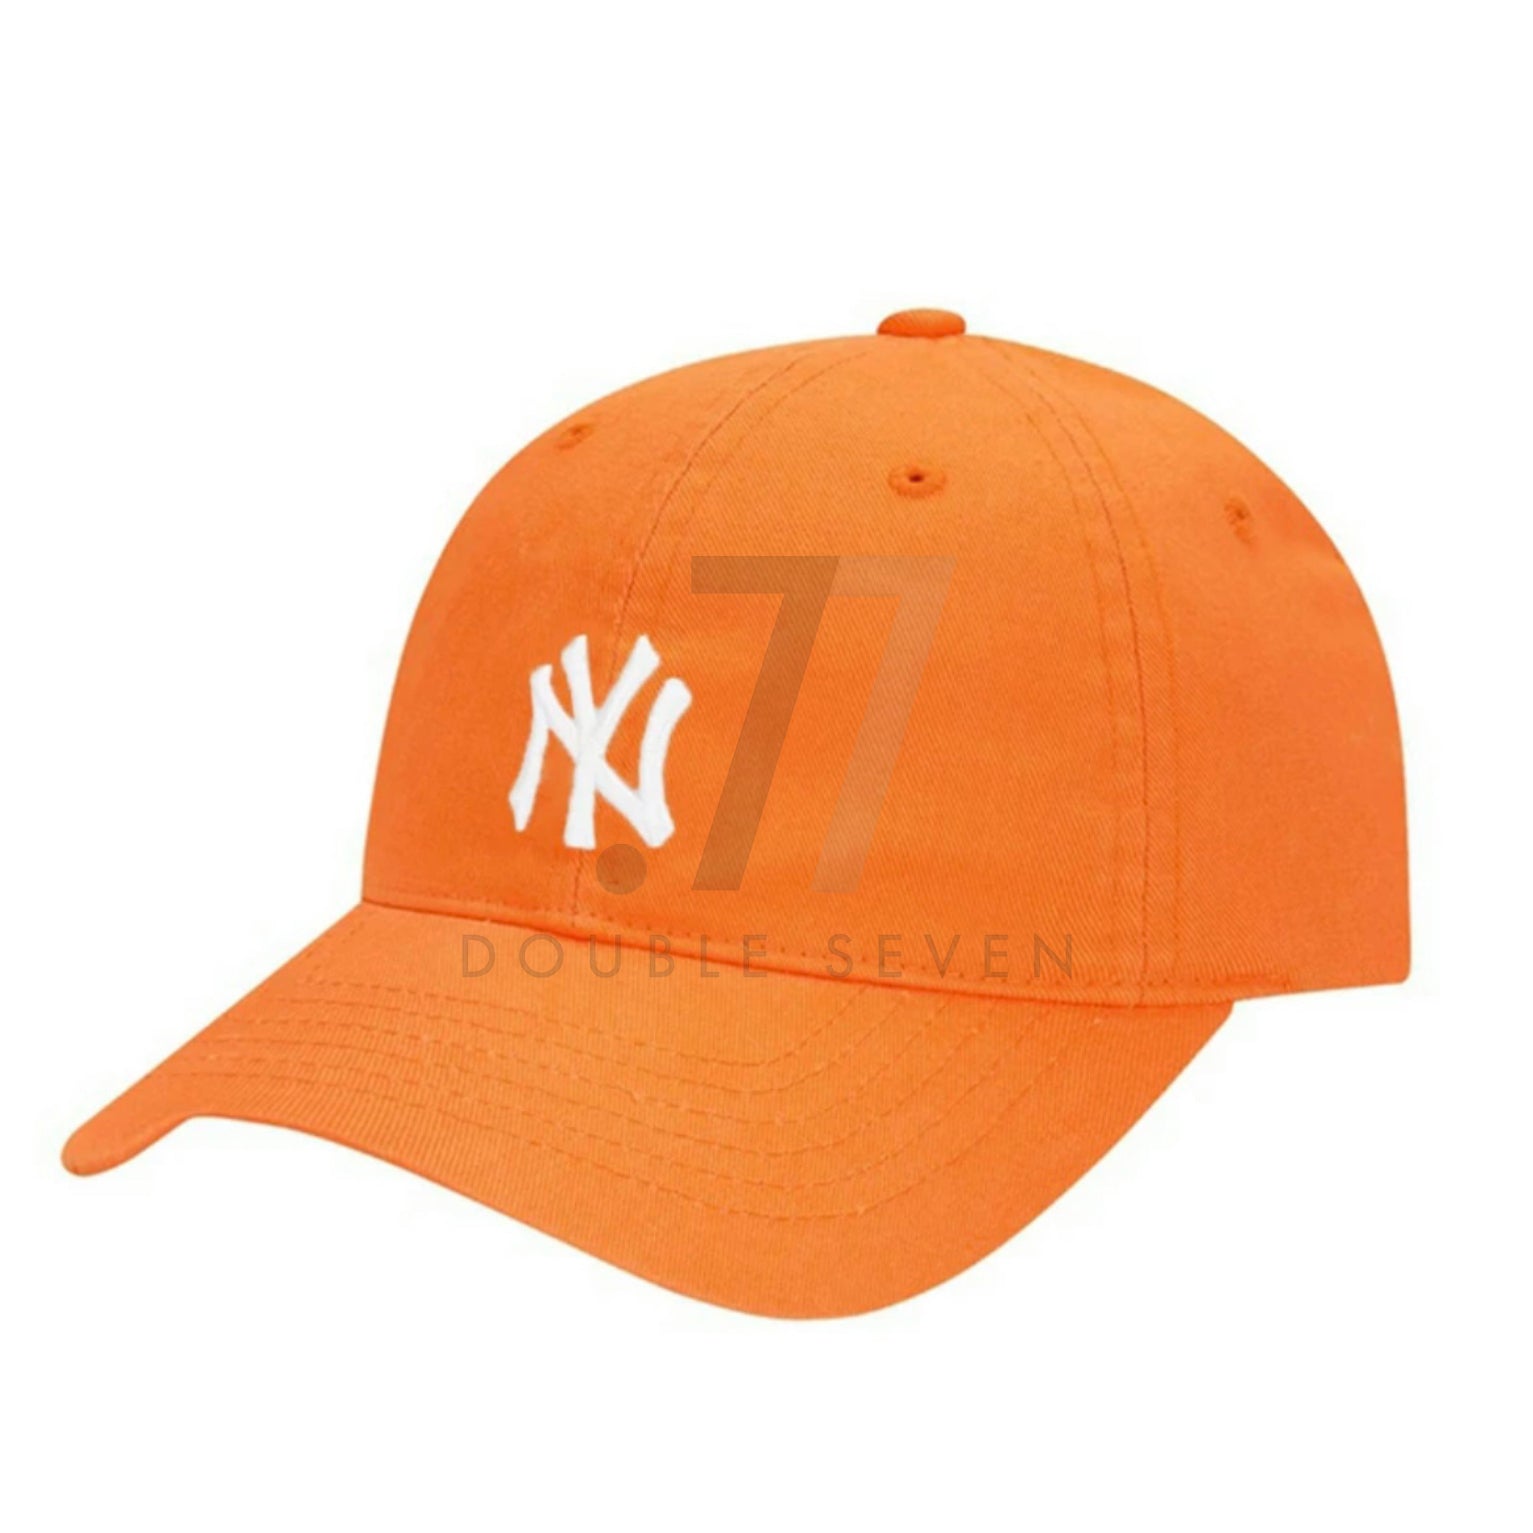 MLB Rookie "New York" Yankees Cap (Preorder)